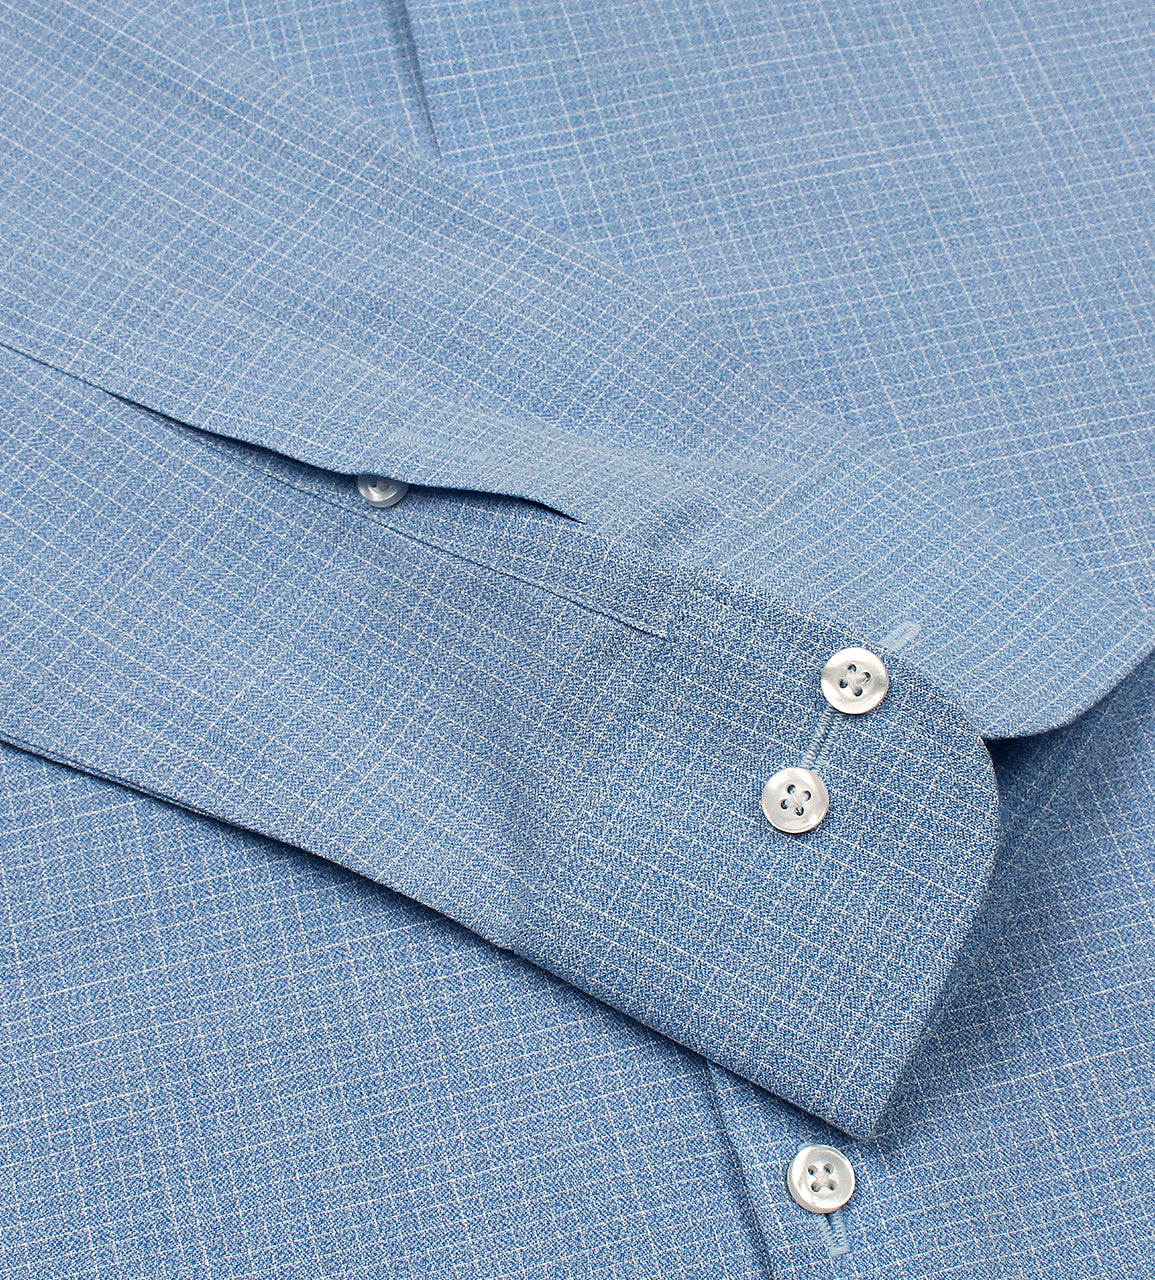 Blue Textured Formal Shirt